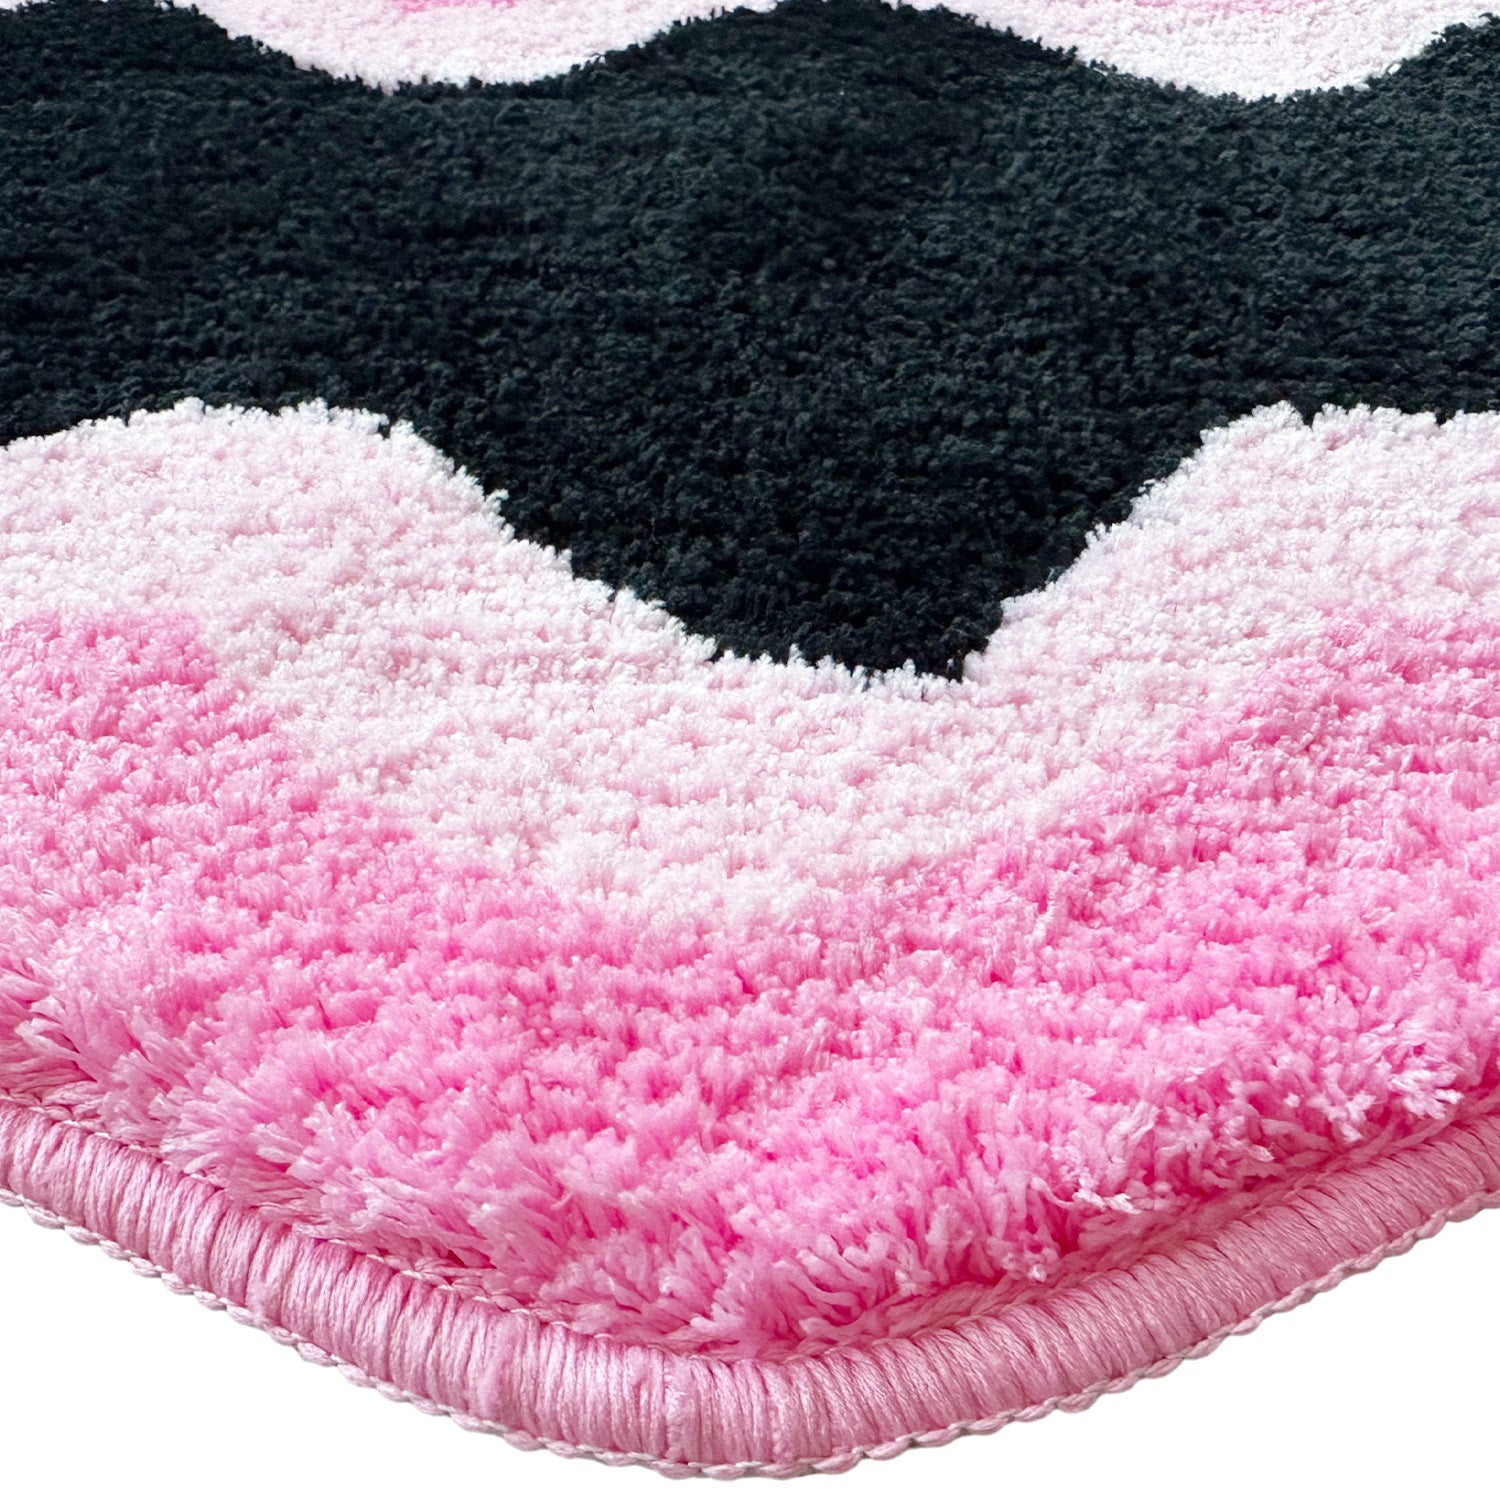 Feblilac Black Pink Wave Bedroom Rug Long Runner, Rug for Bedside Bathroom, Water Absorbent Non-Slip Area Rug Mat for Home Decor